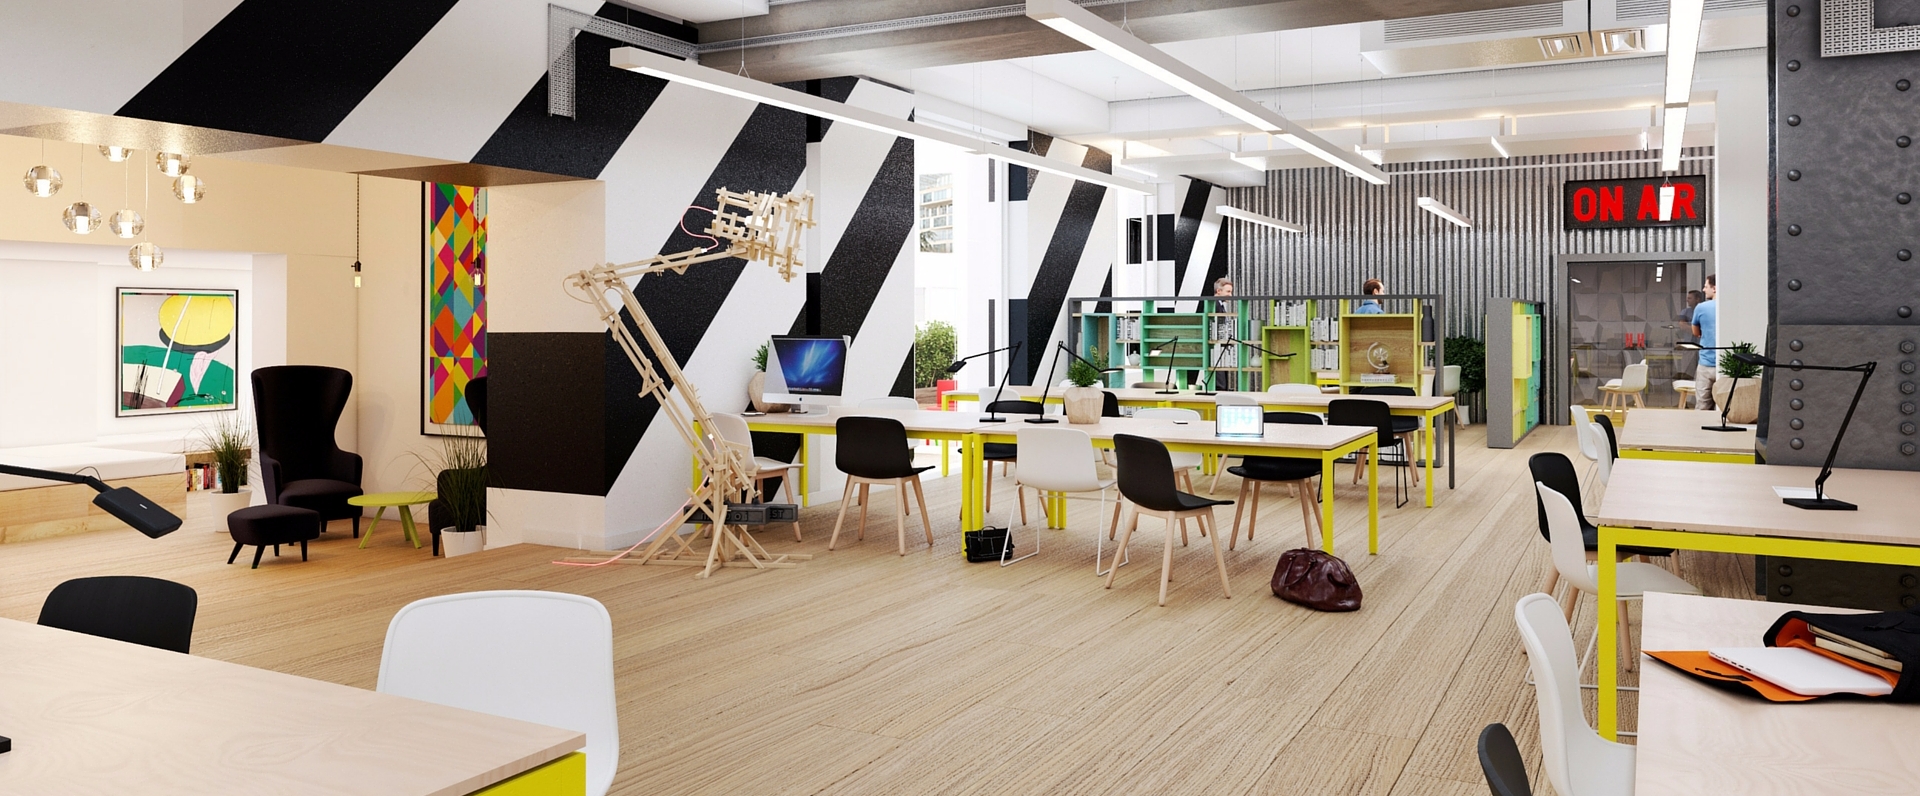 Les 10 plus beaux espaces de coworking dans le monde | Blog Hub-Grade